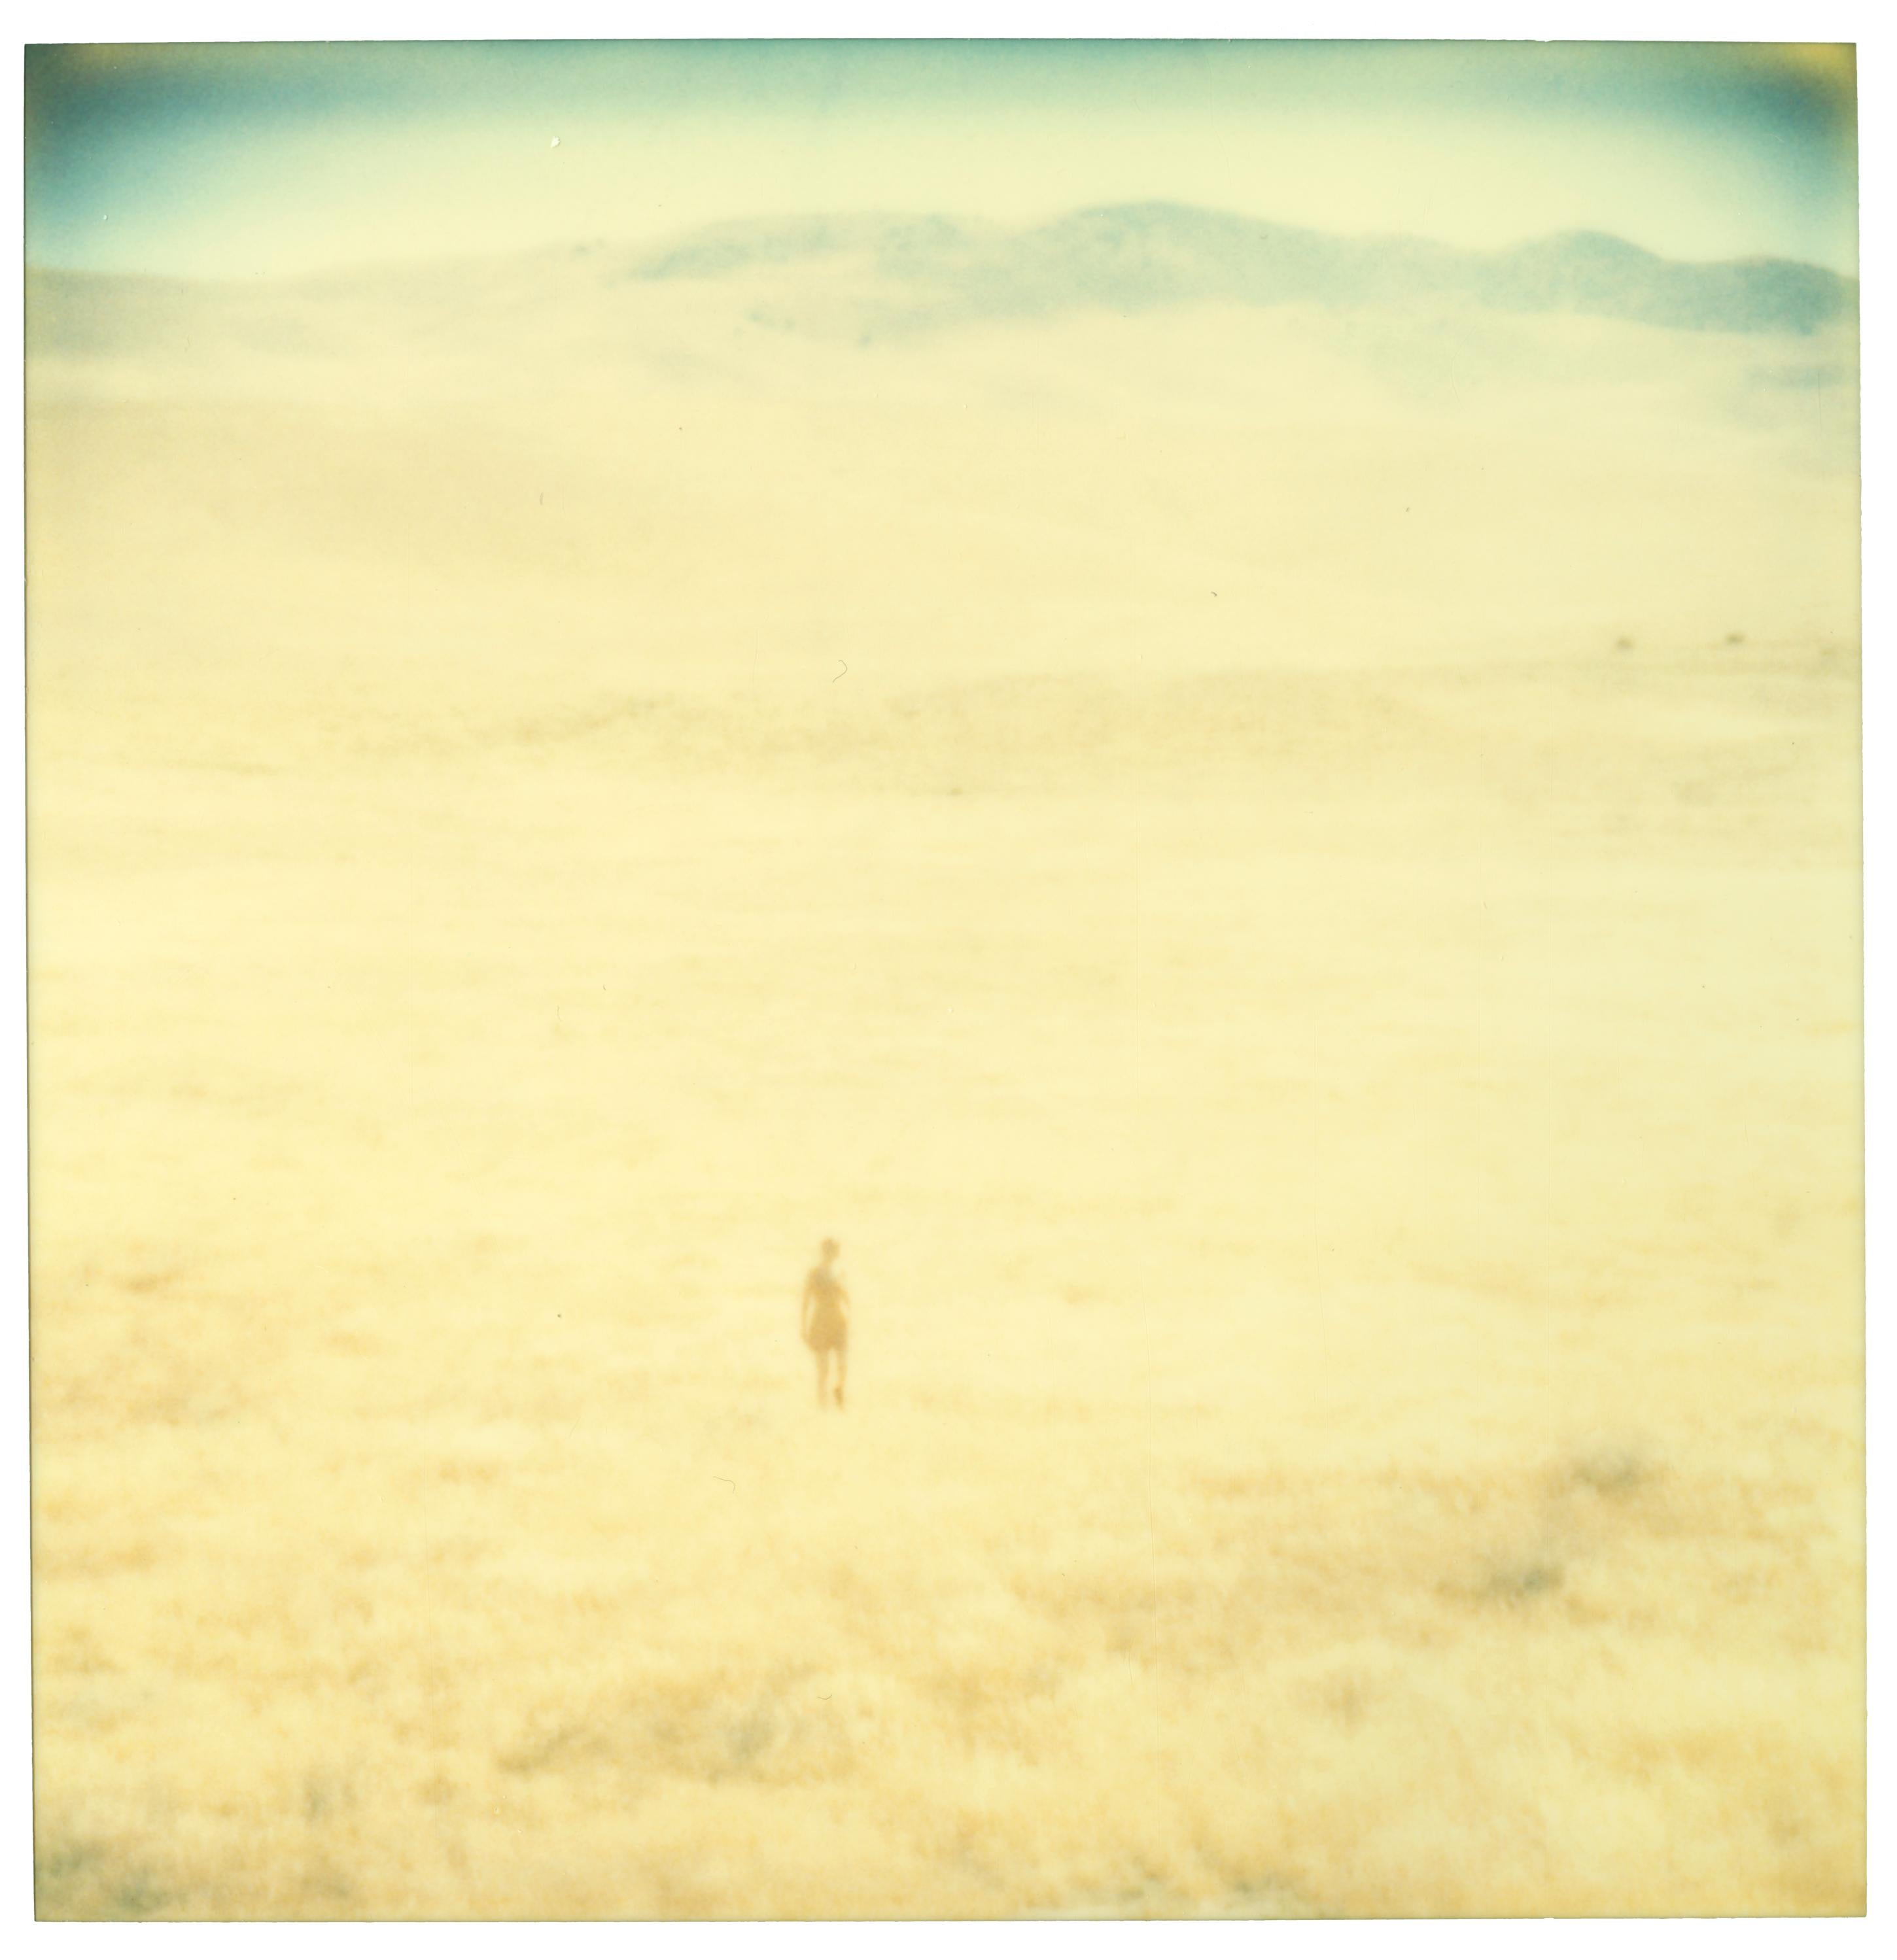 Stefanie Schneider Landscape Photograph - Untitled (Oilfields) - Contemporary, 21st Century, Desert, Polaroid, Landscape 